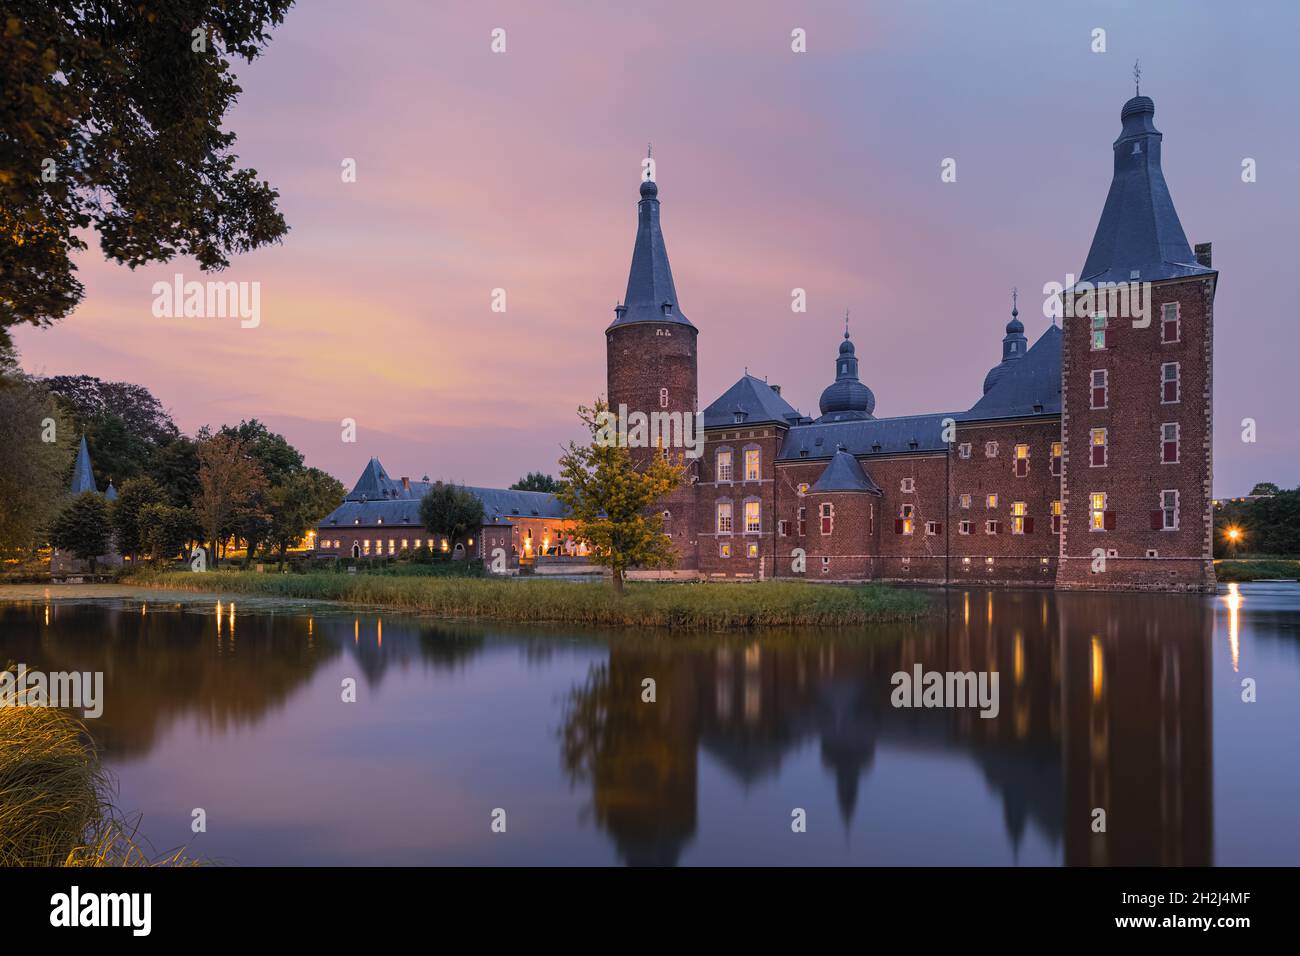 Schloss Hoensbroek ist eines der größten Schlösser in den Niederlanden. Es befindet sich in Hoensbroek, einer Stadt in der Provinz Limburg. Dieses imposante Wat Stockfoto